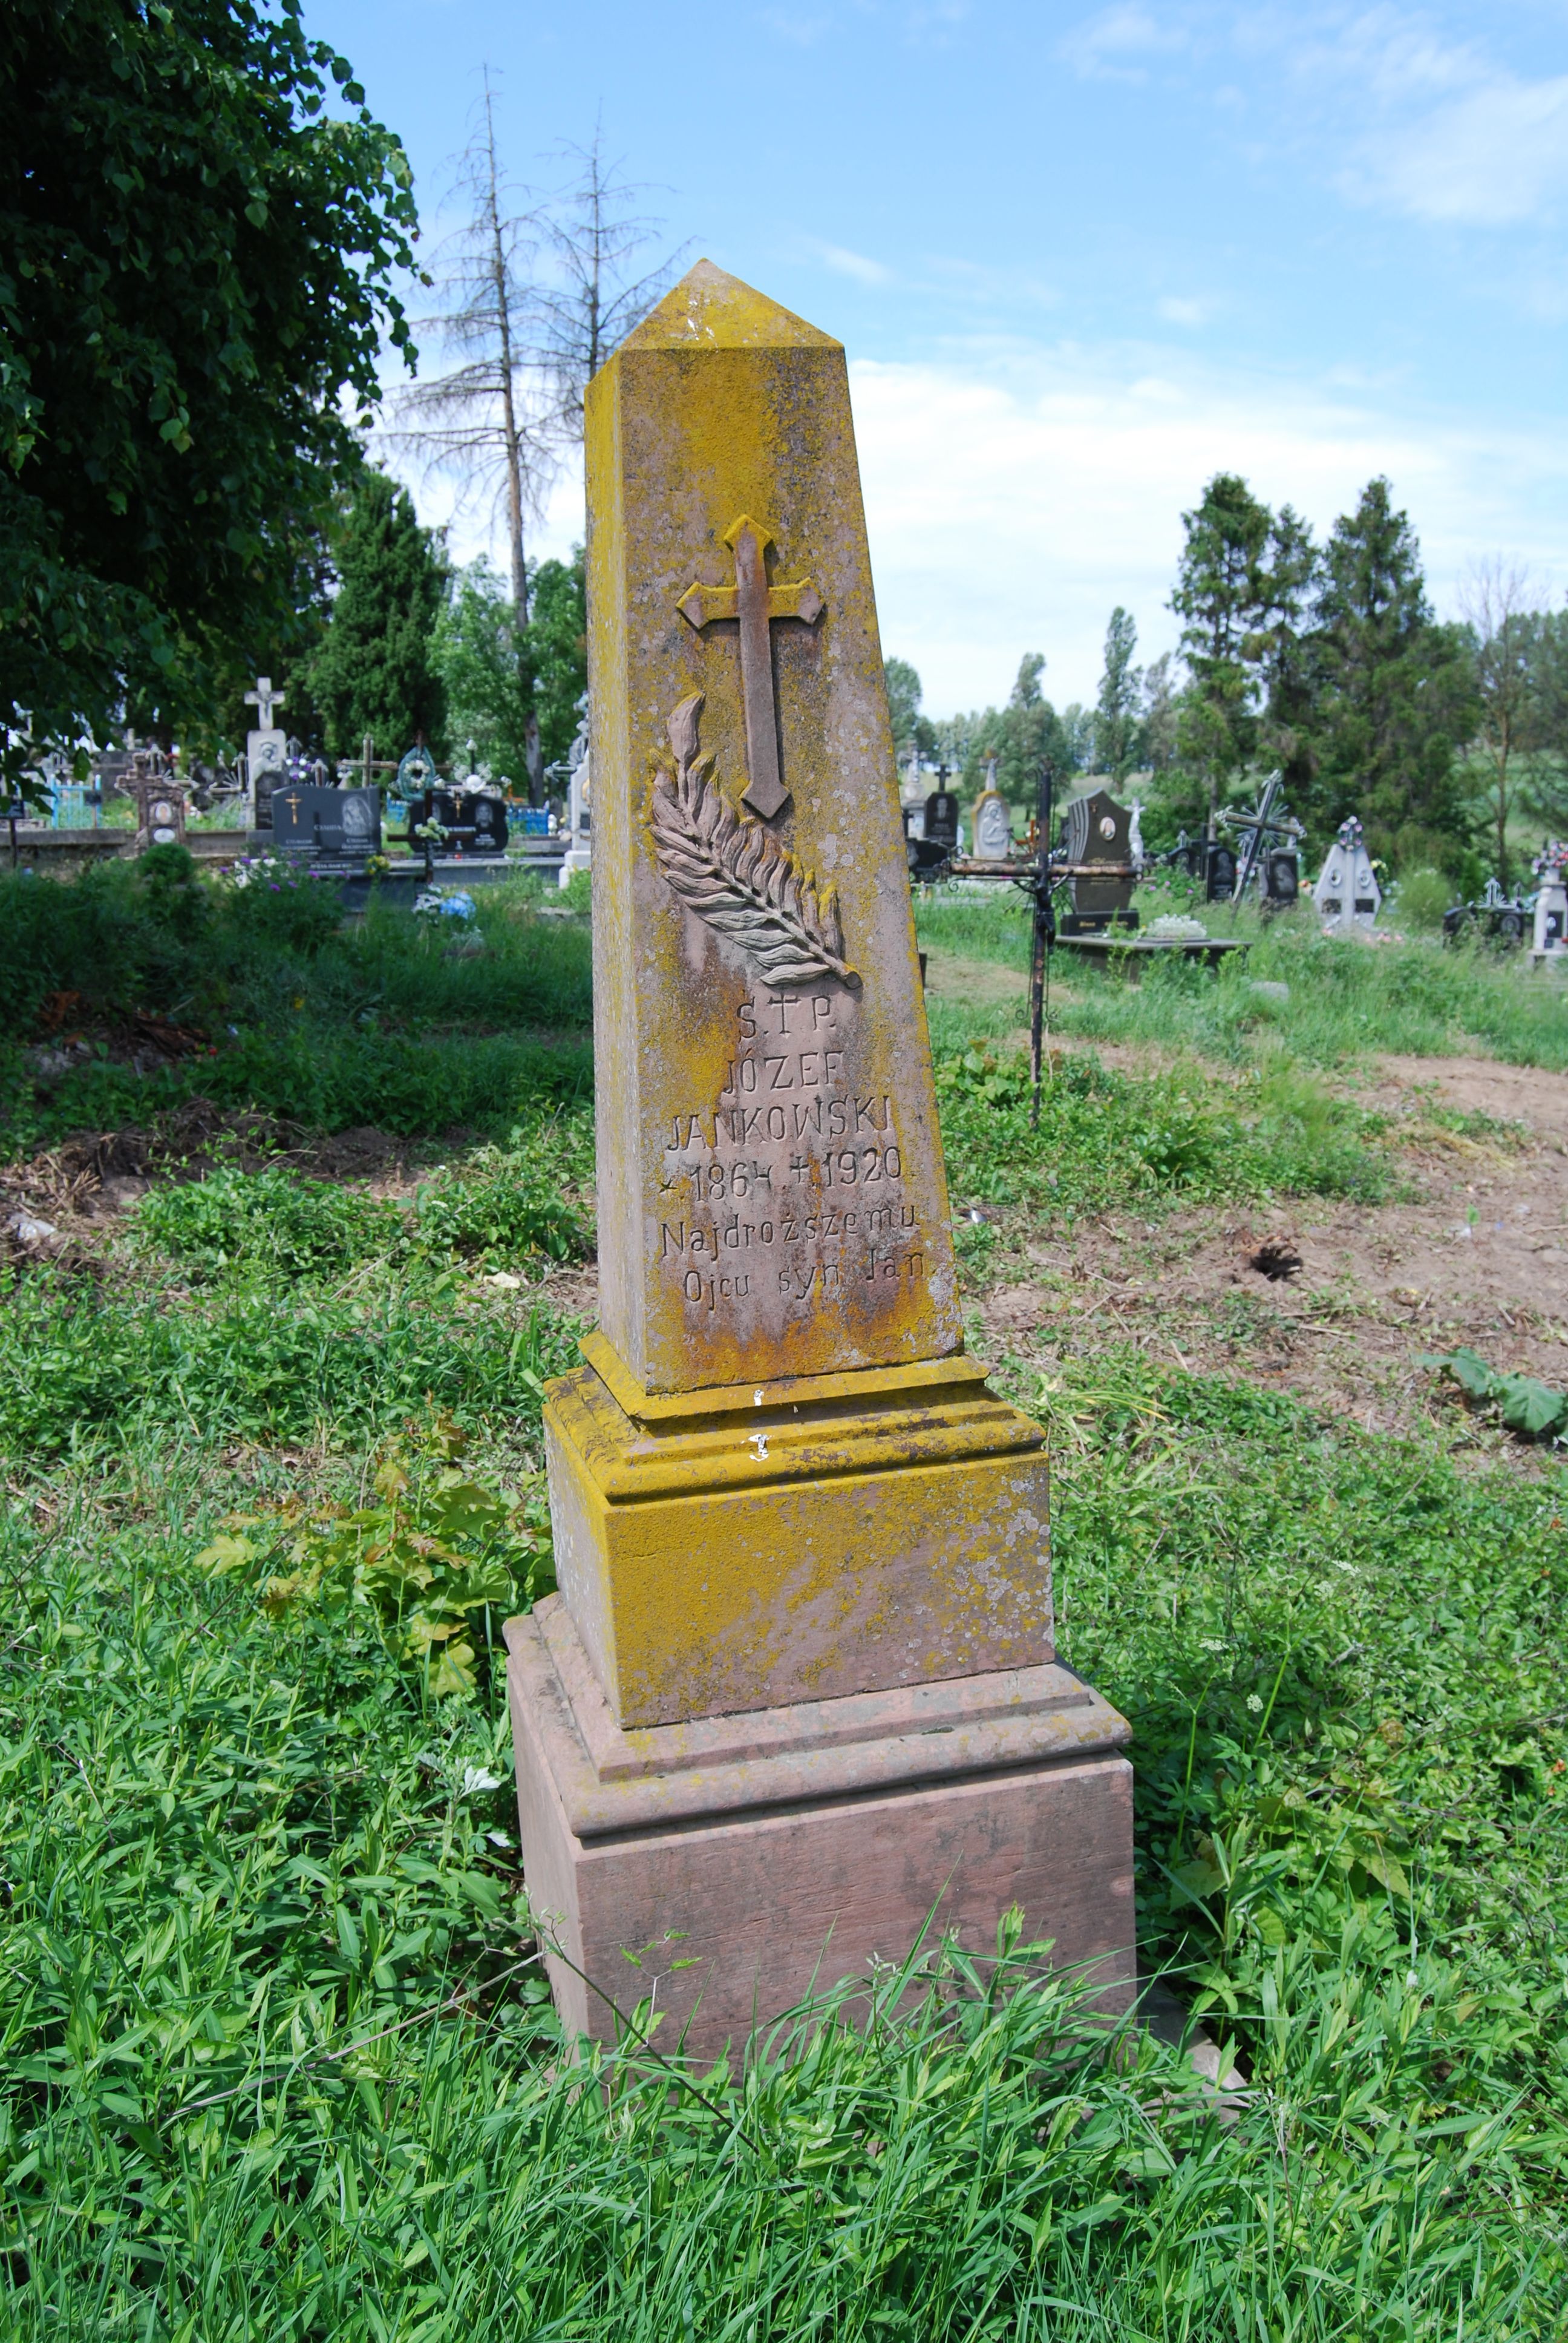 Tombstone of Jozef Jankowski, Skoromochy cemetery